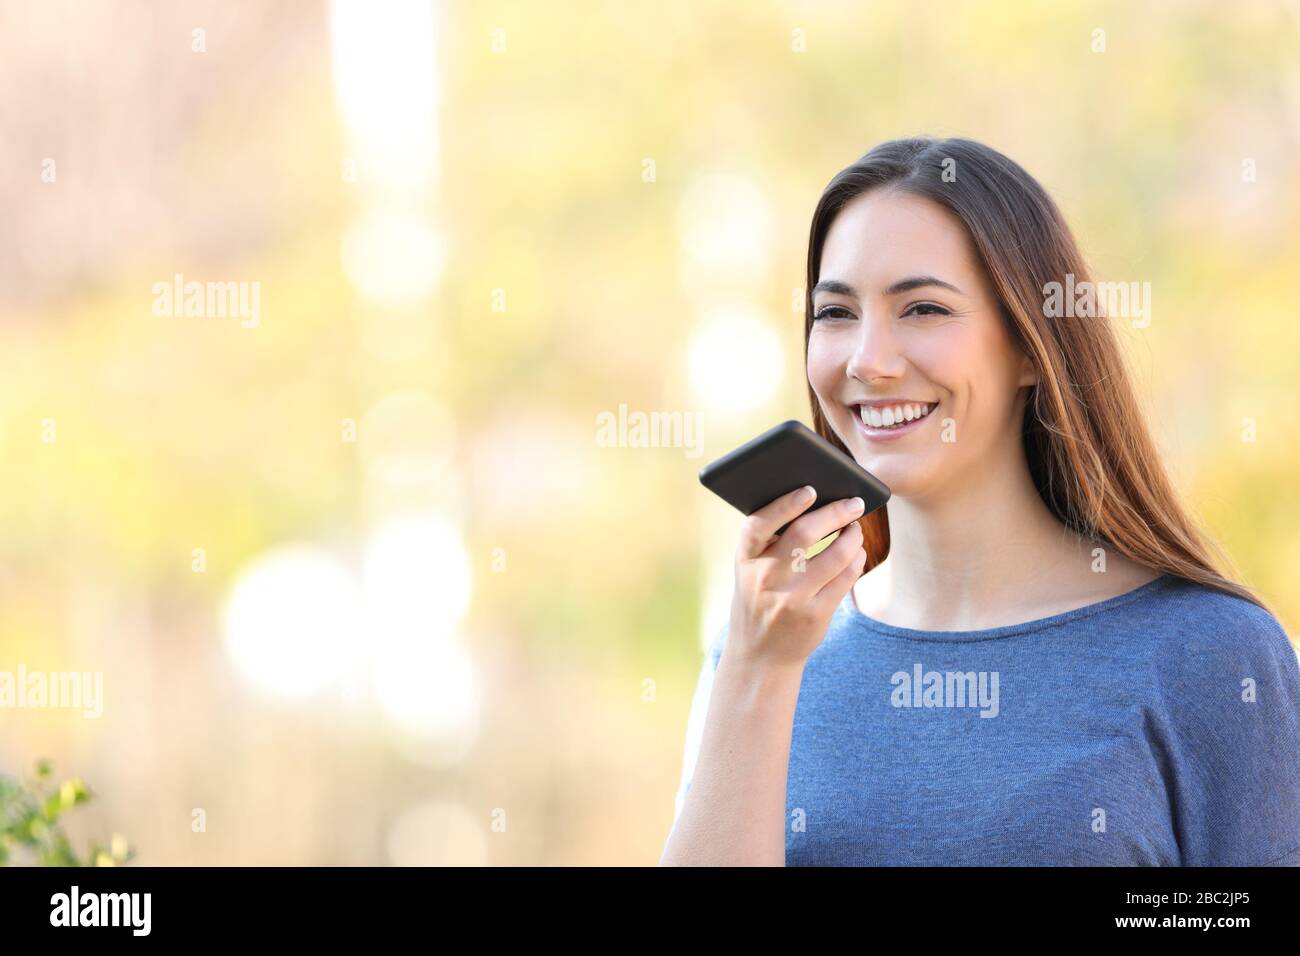 Glückliches Mädchen, das sms mit Spracherkennung auf dem Handy in einem Park aufzeichnet Stockfoto